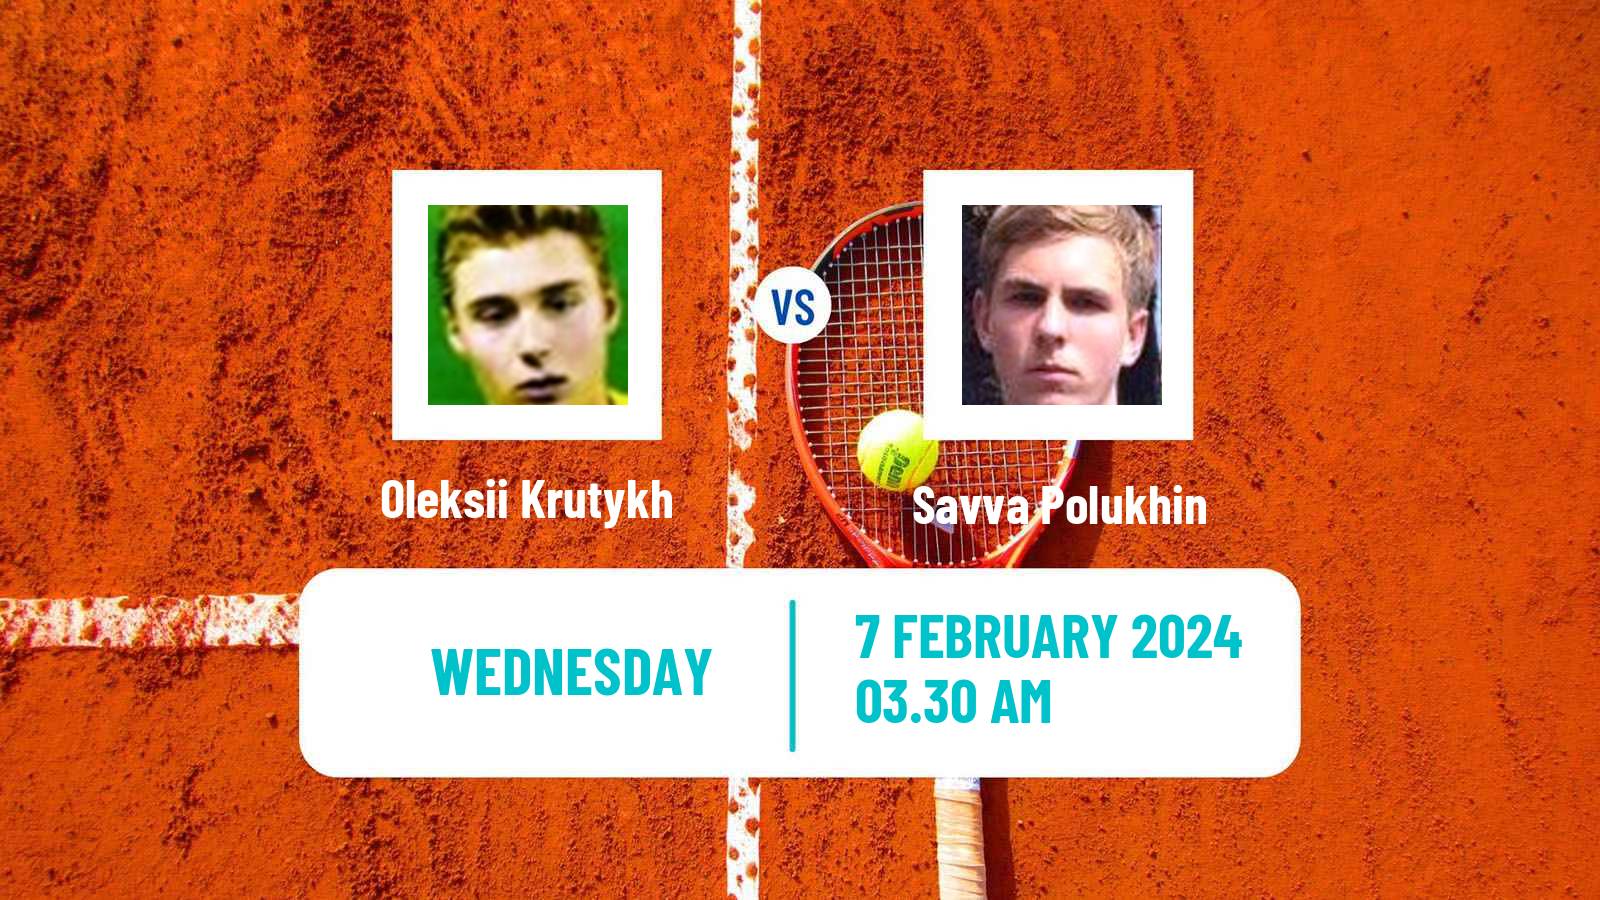 Tennis ITF M25 Antalya 2 Men Oleksii Krutykh - Savva Polukhin